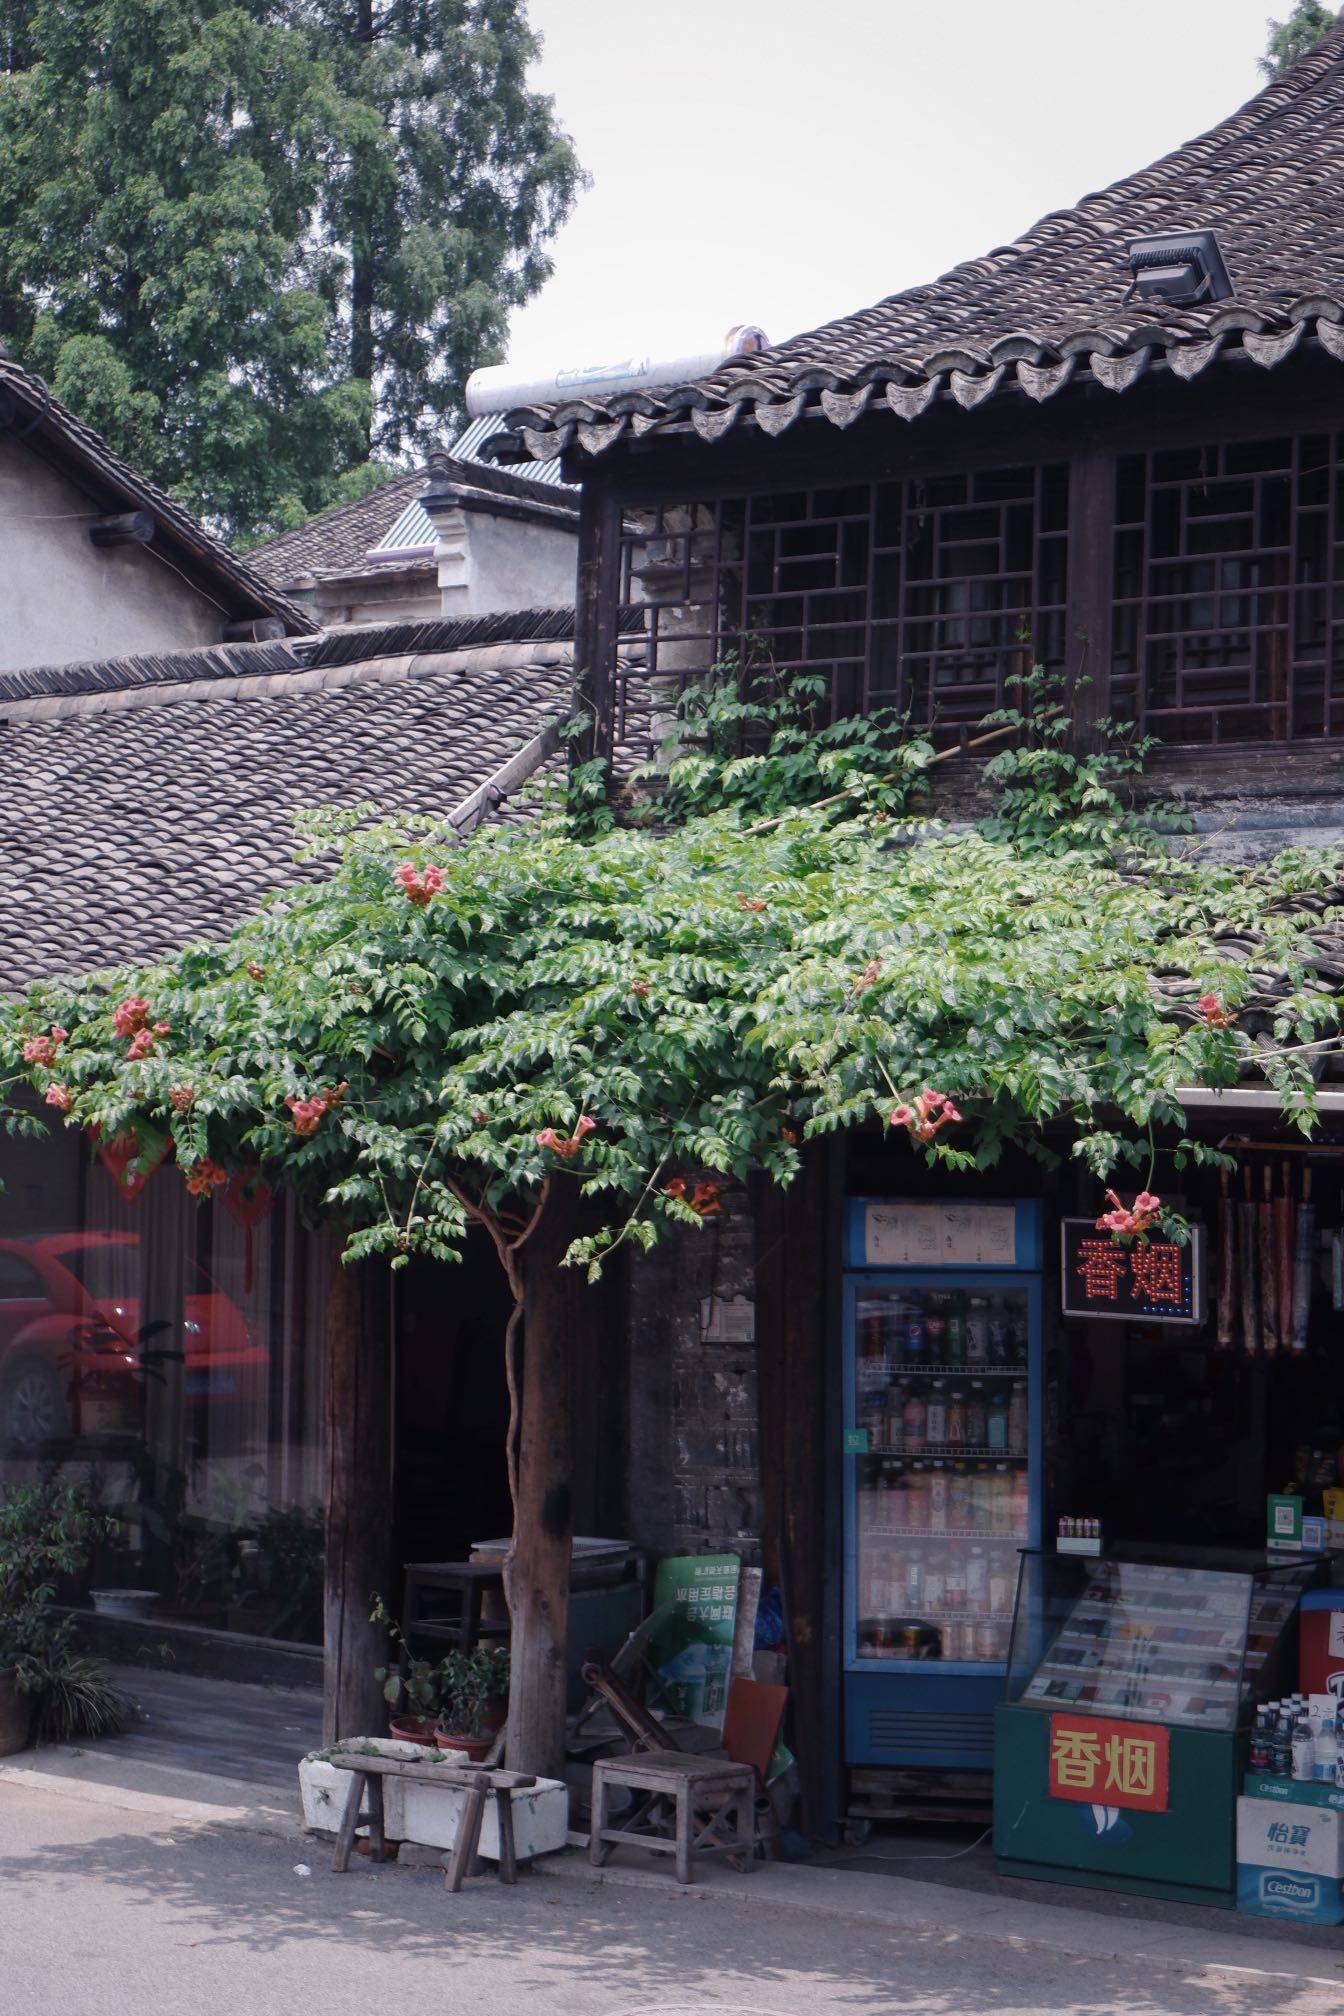 原创             疫情下的乌镇景区几乎没有游客，店铺关张，再现20年前的江南水乡